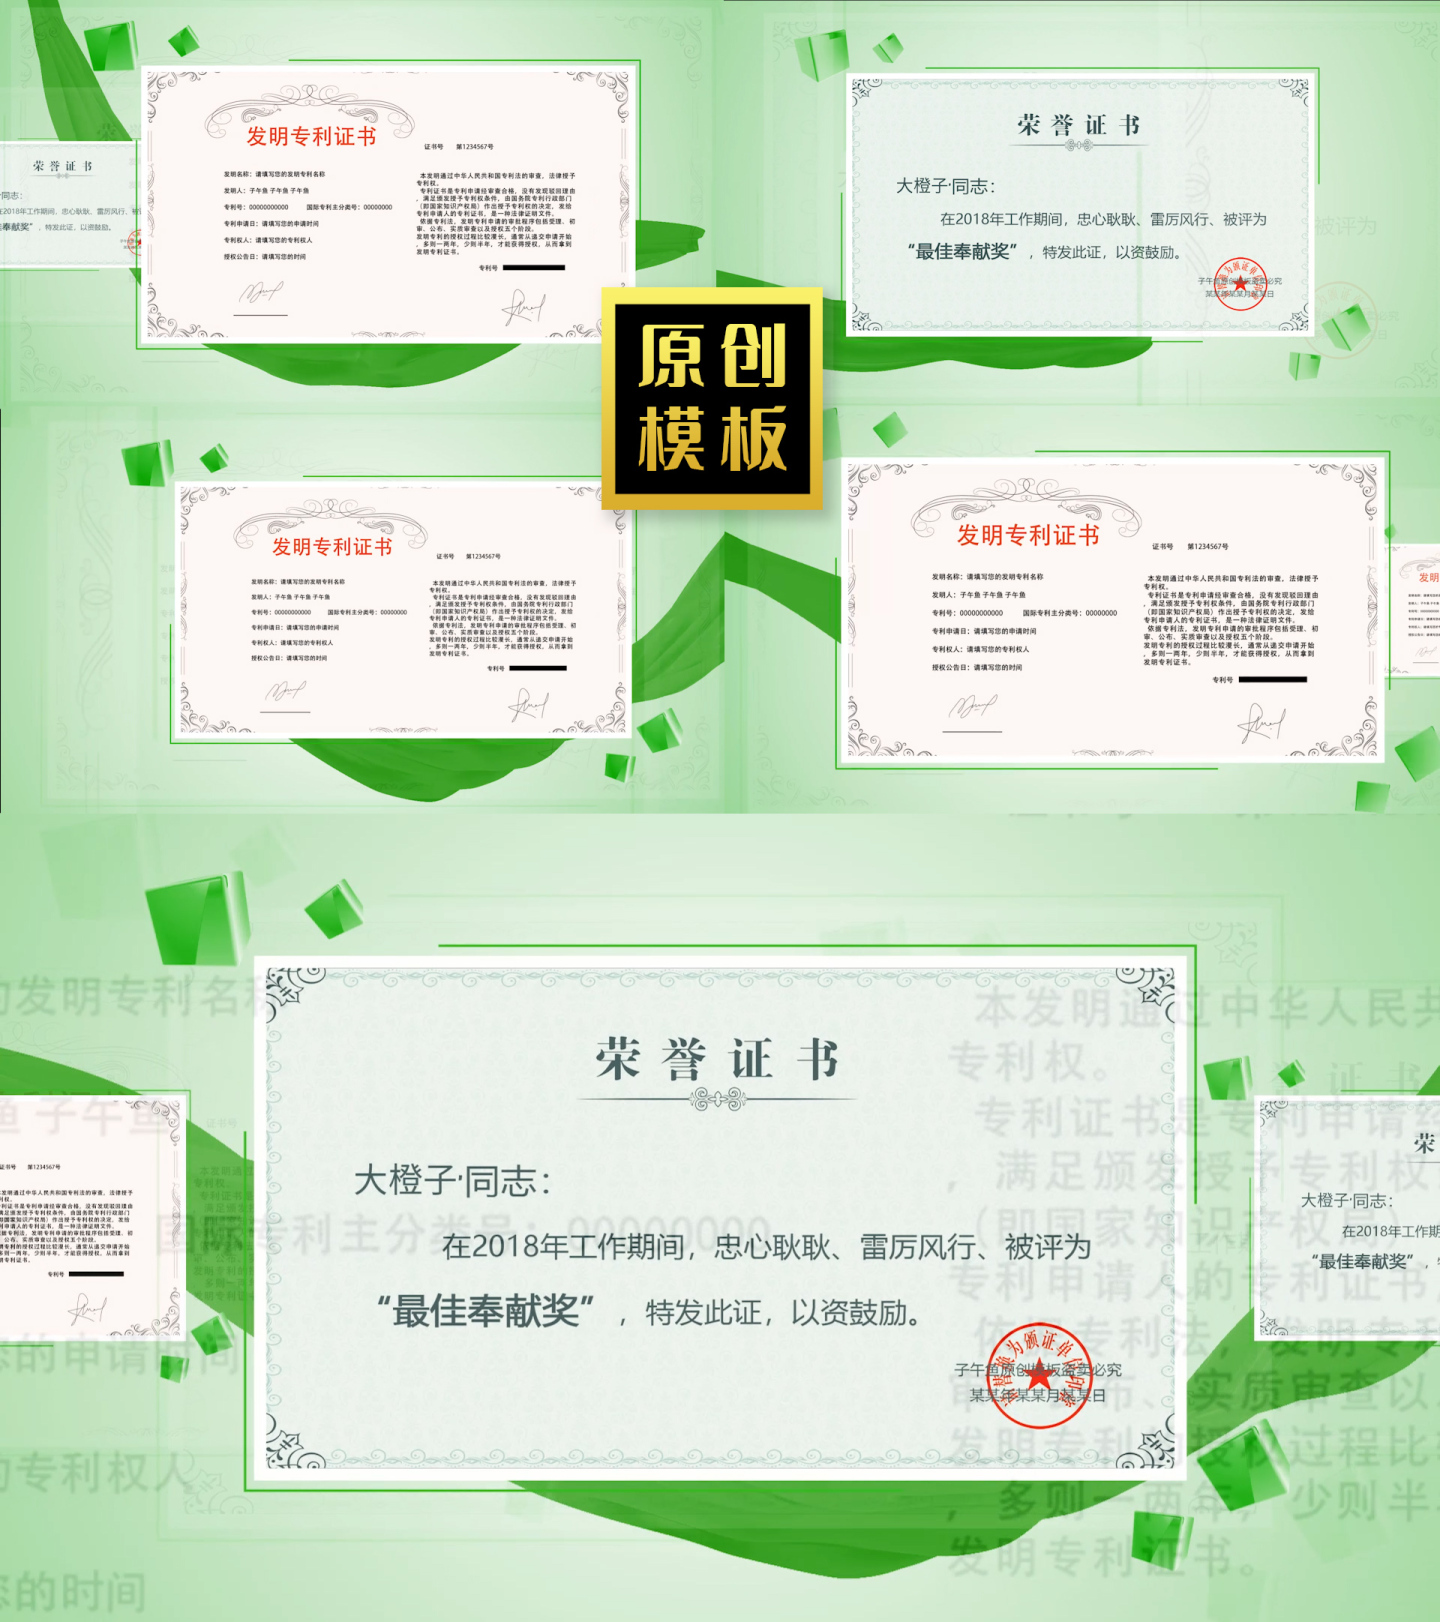 绿色生态环保荣誉证书图文介绍奖牌照片包装